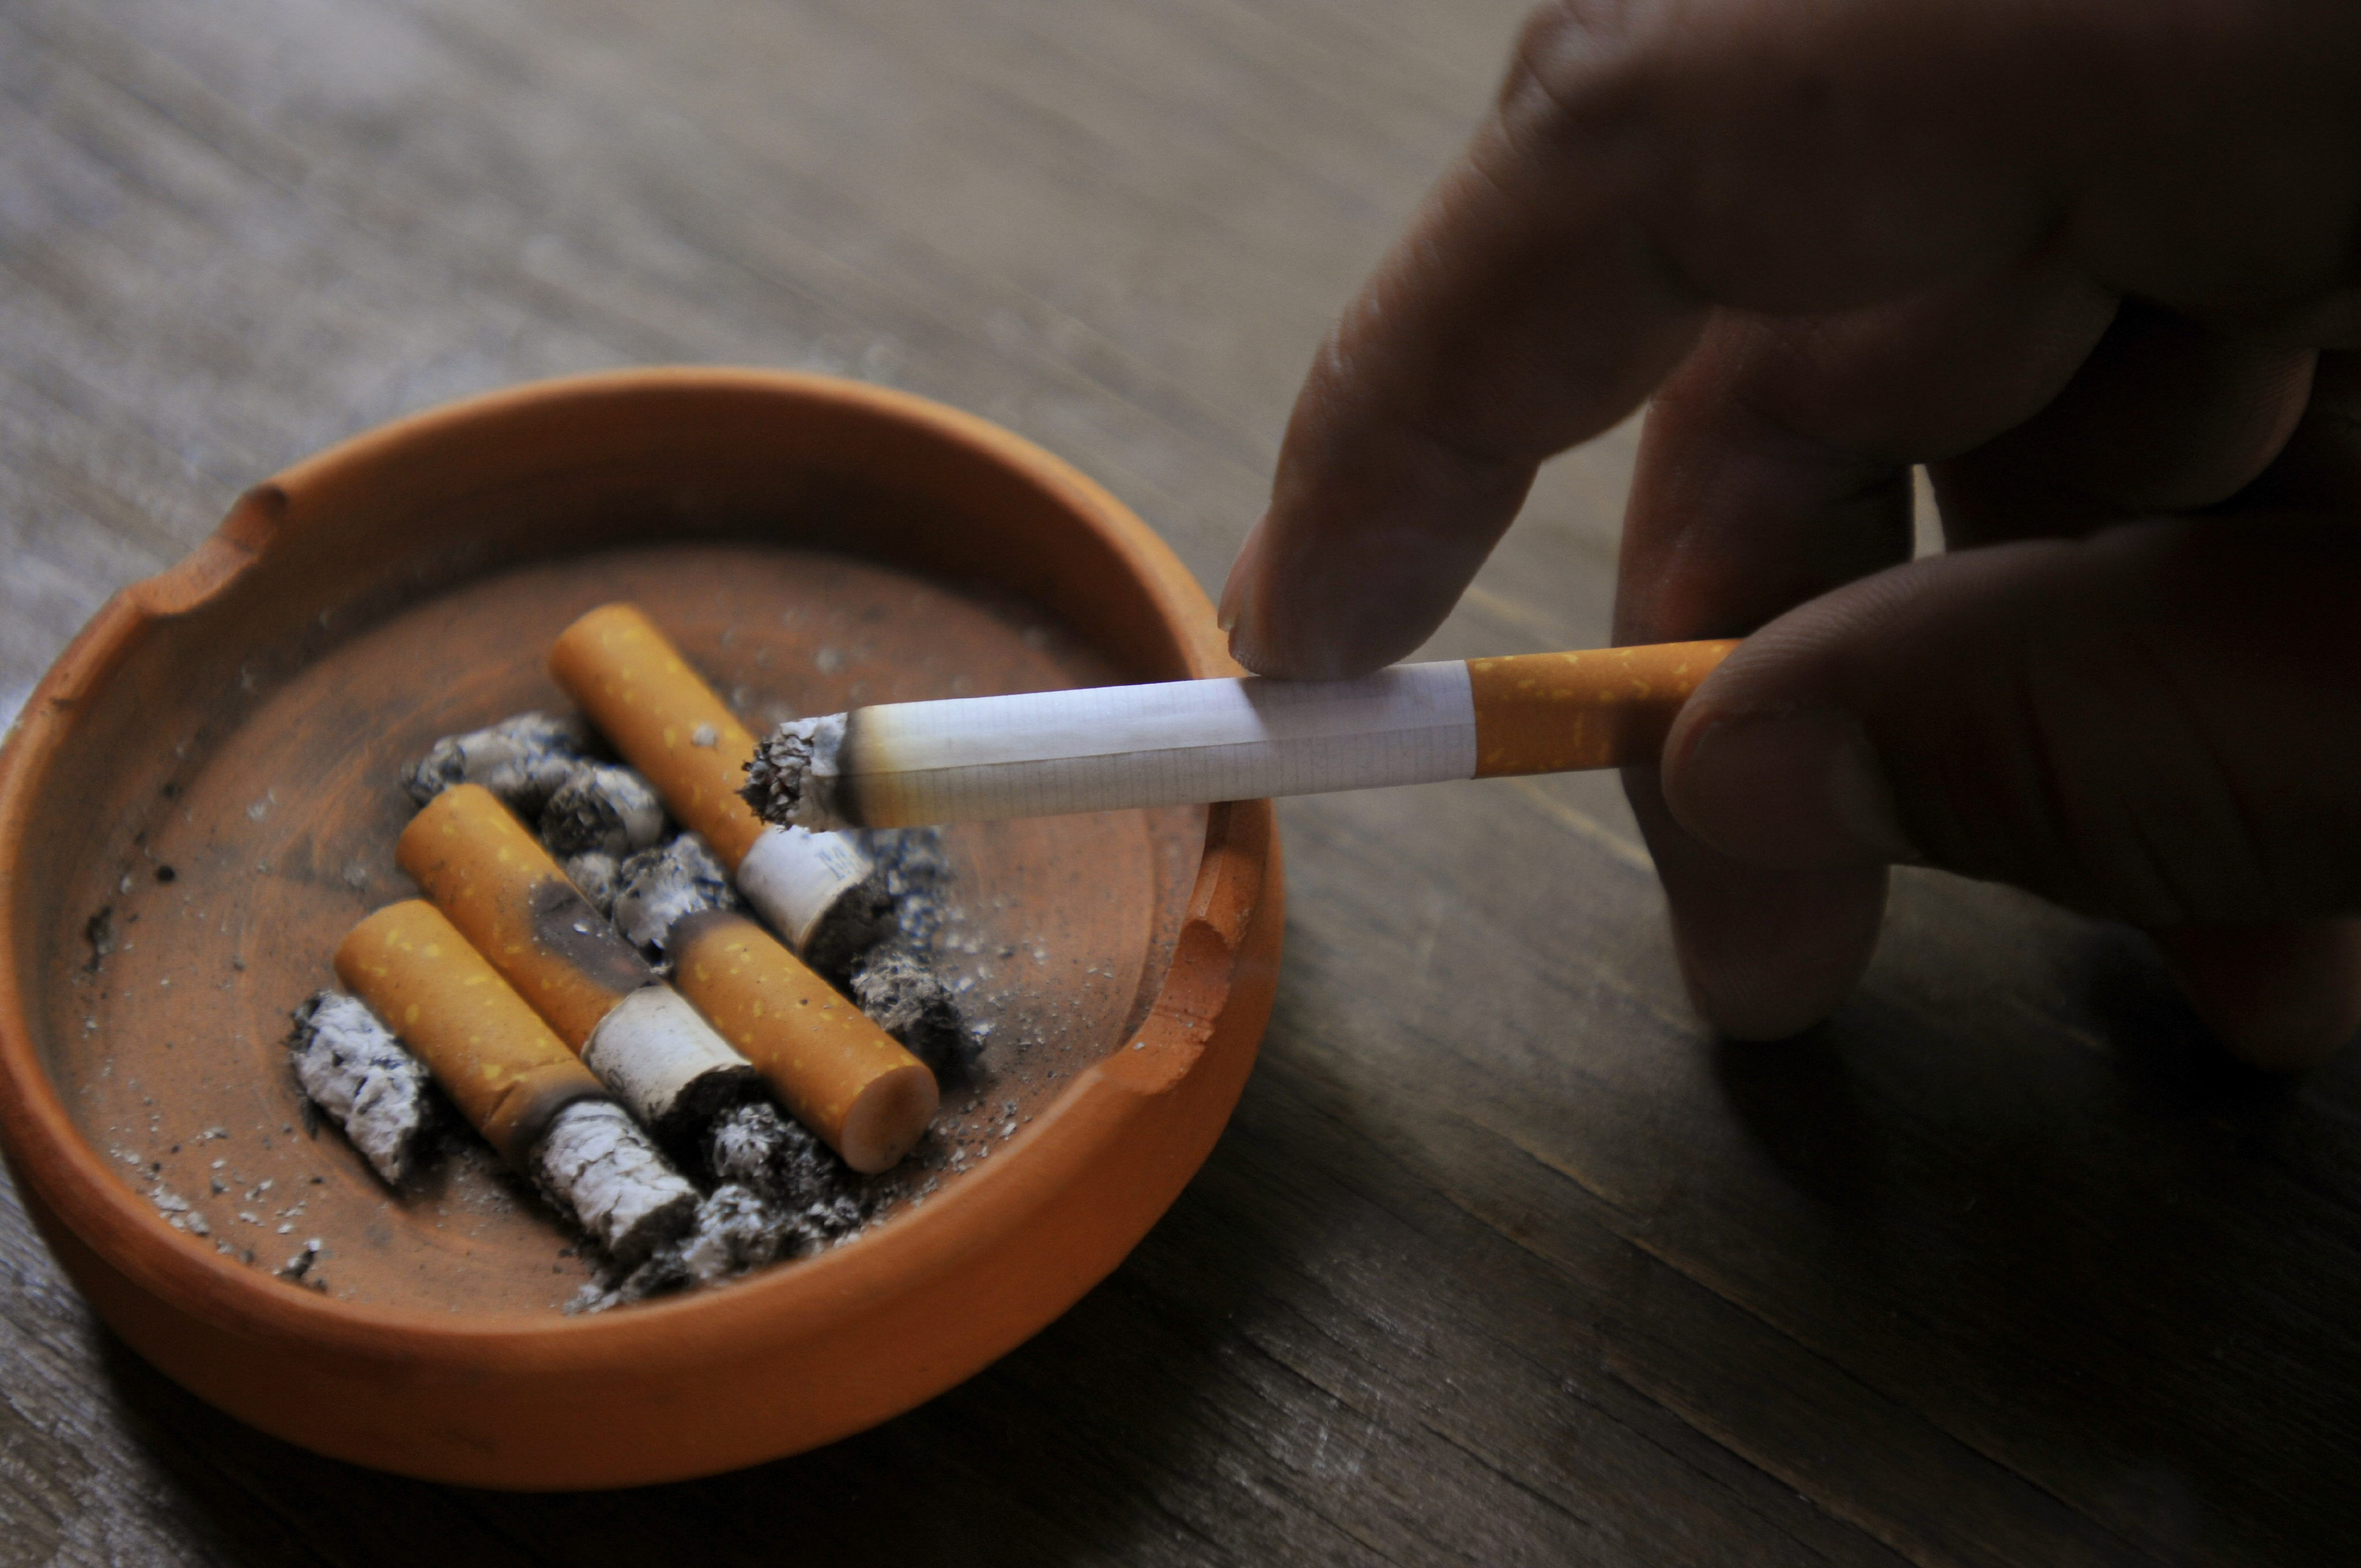 Niños expuestos a tabaco, con más riesgos de padecimientos respiratorios: IMSS